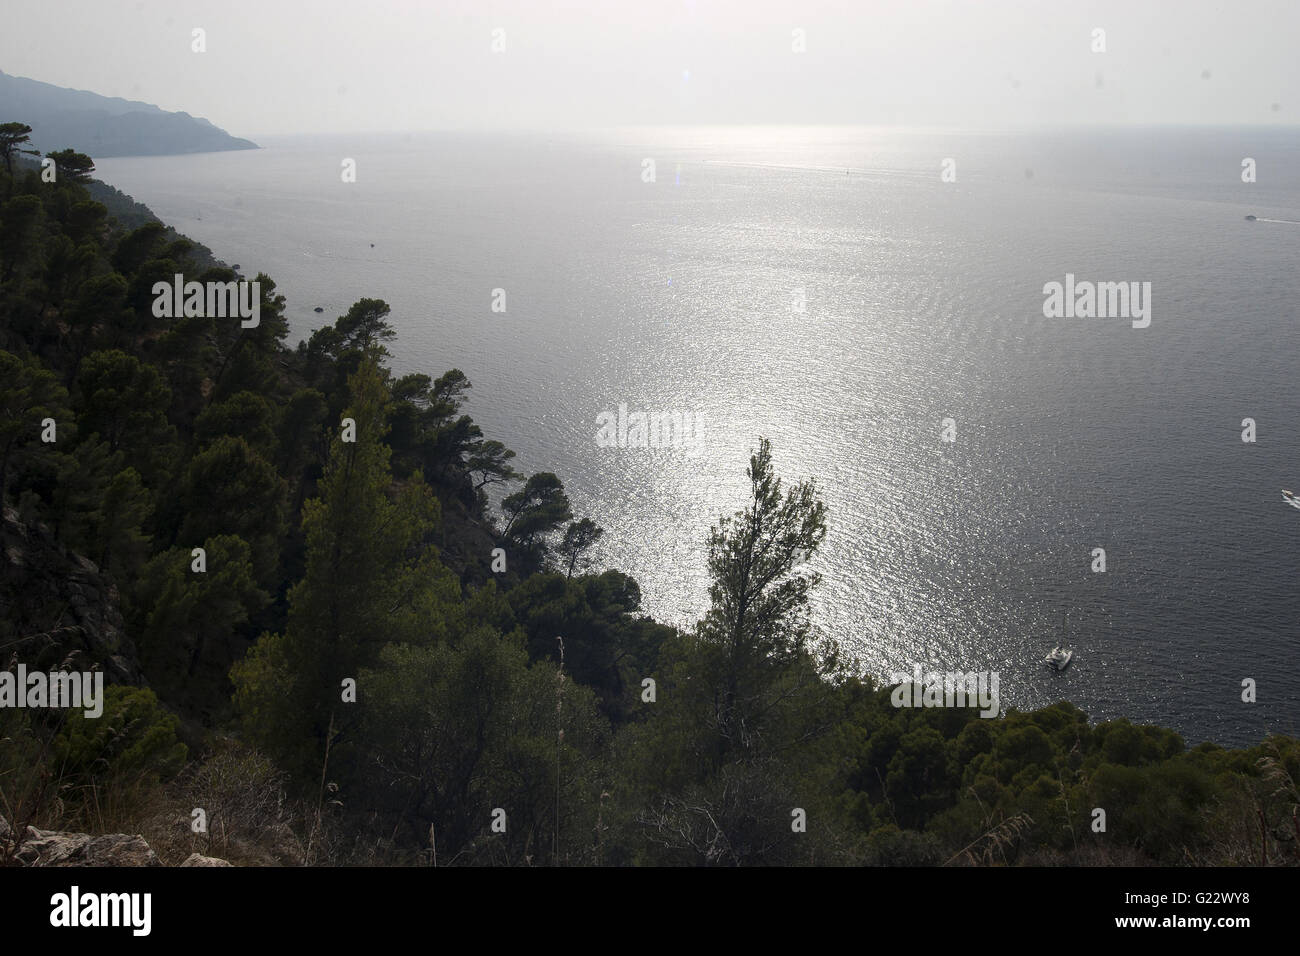 ein schönes Bild von der dunstigen Küsten blaues Meer mit Vegetation im Vordergrund in Palma De Mallorca, Spanien, am Meer, Tourismus Stockfoto